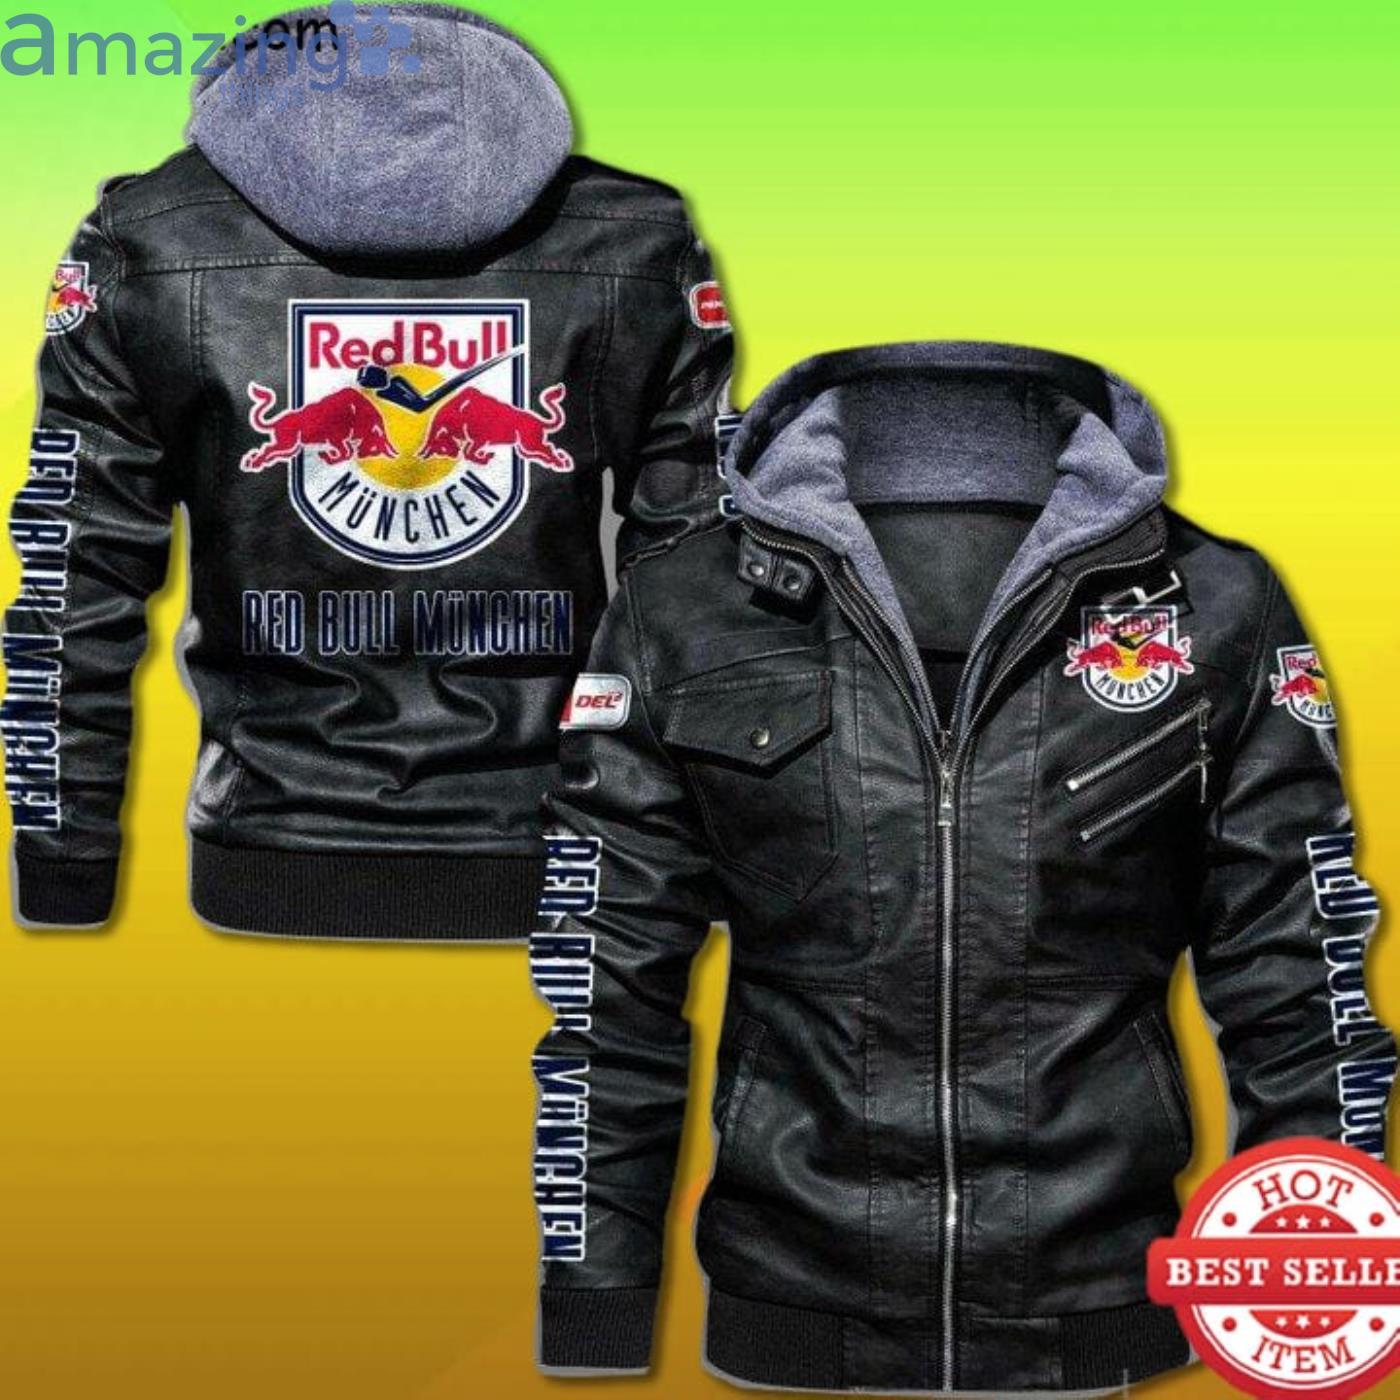 Whitney Vellykket Aktuator Ehc Red Bull Munchen 2D Leather Jacket